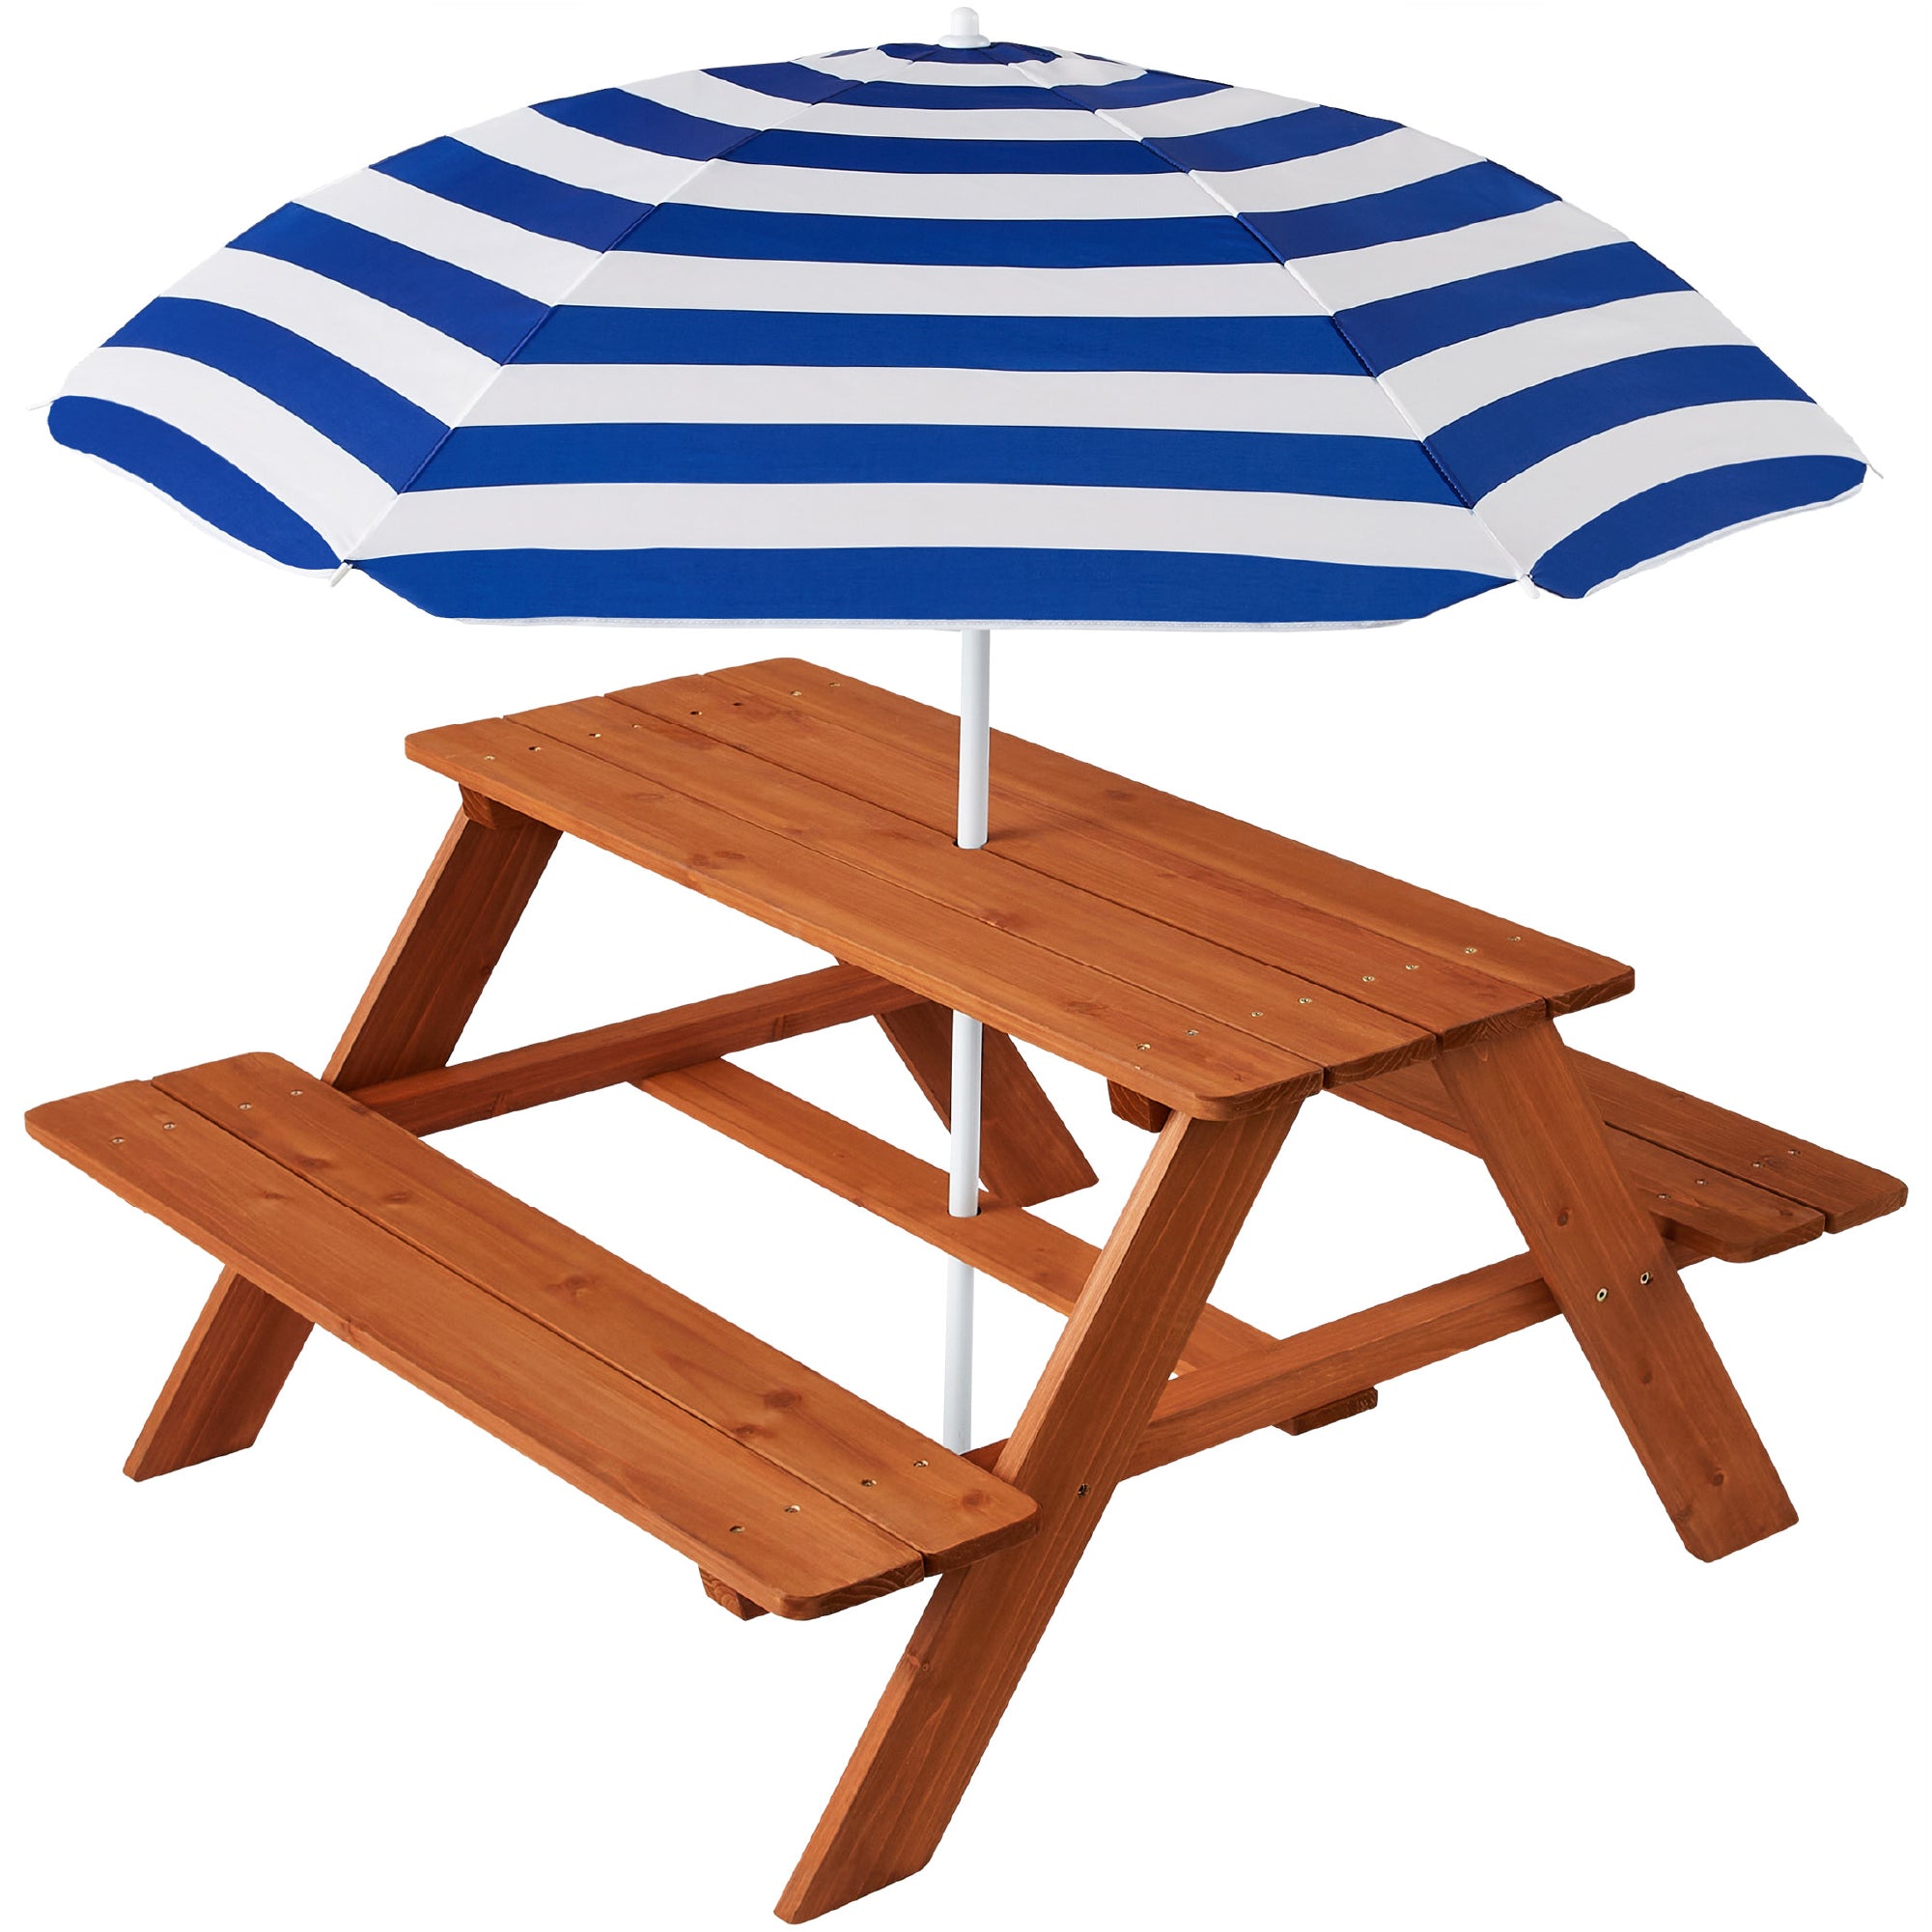 Kids Wooden Outdoor Picnic Table w/ Adjustable Umbrella, Built-In